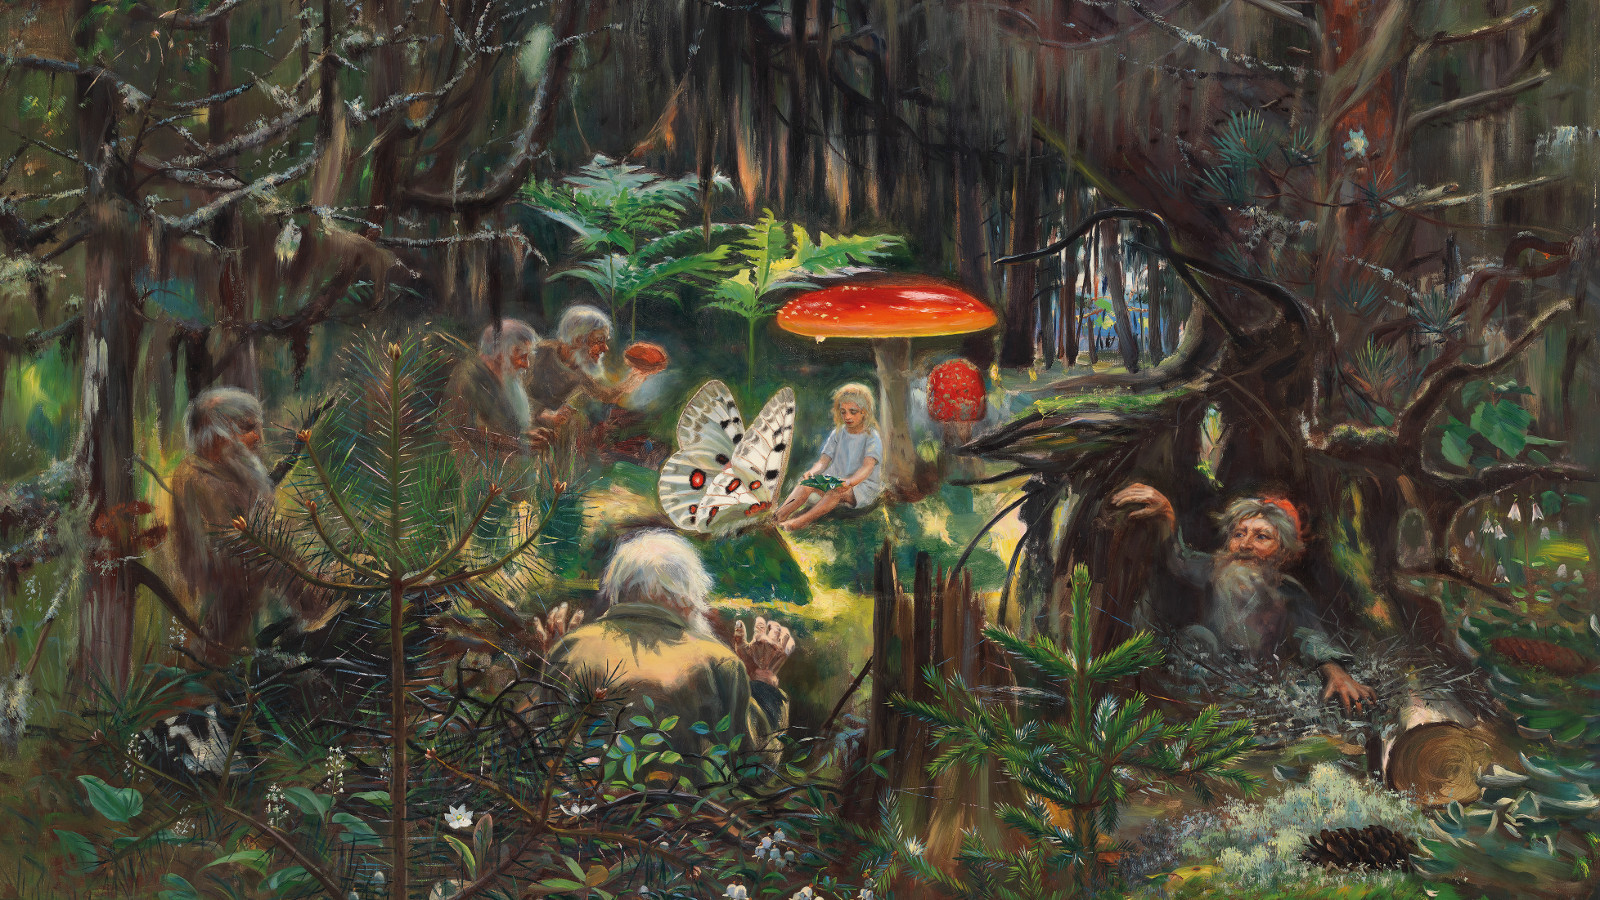 Kuvassa on metsää, jossa on kärpässienen alla prinsessa vaaleassa puvussa ja vieressä iso pinkki perhonen. Lähellä pensaissa on haltijoita.